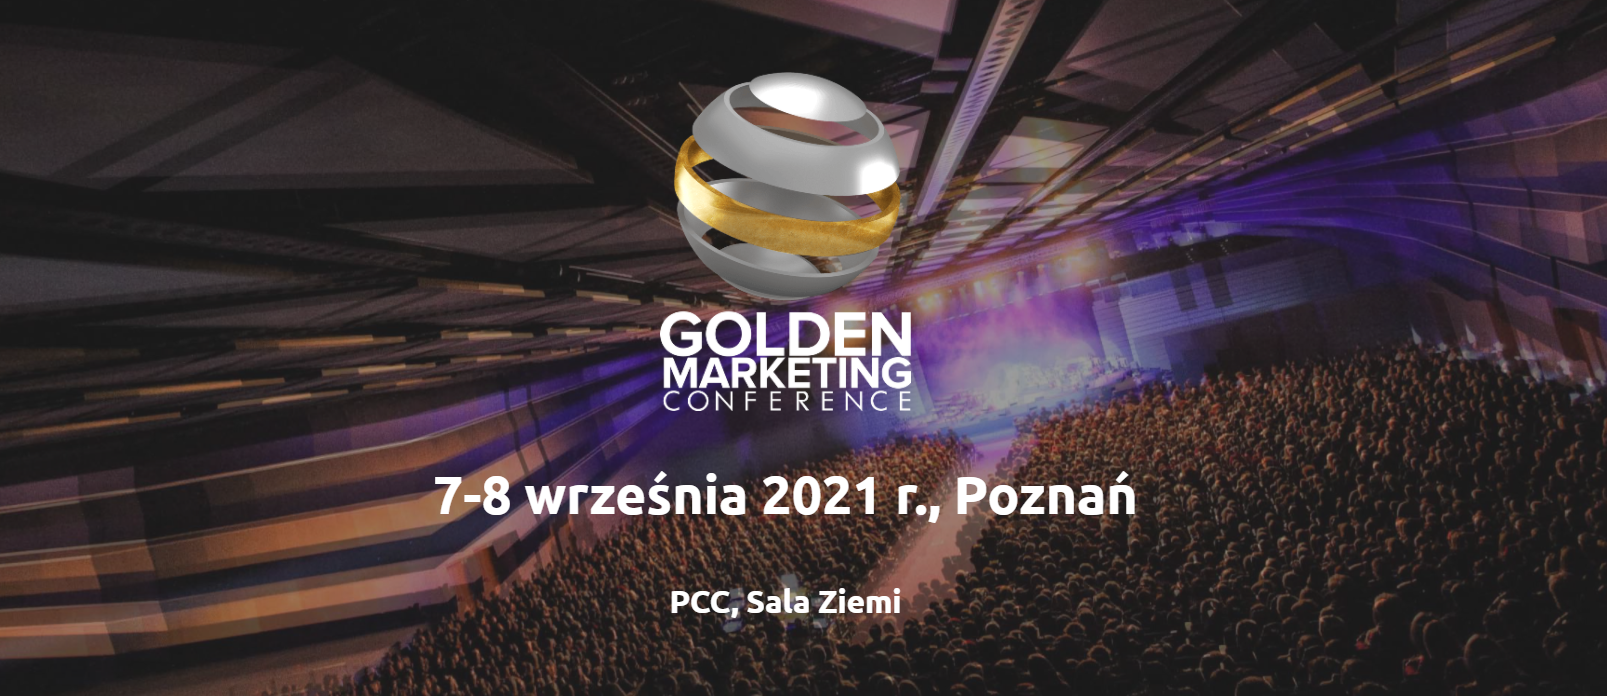 Zapraszamy na Golden Marketing Conference w Poznaniu